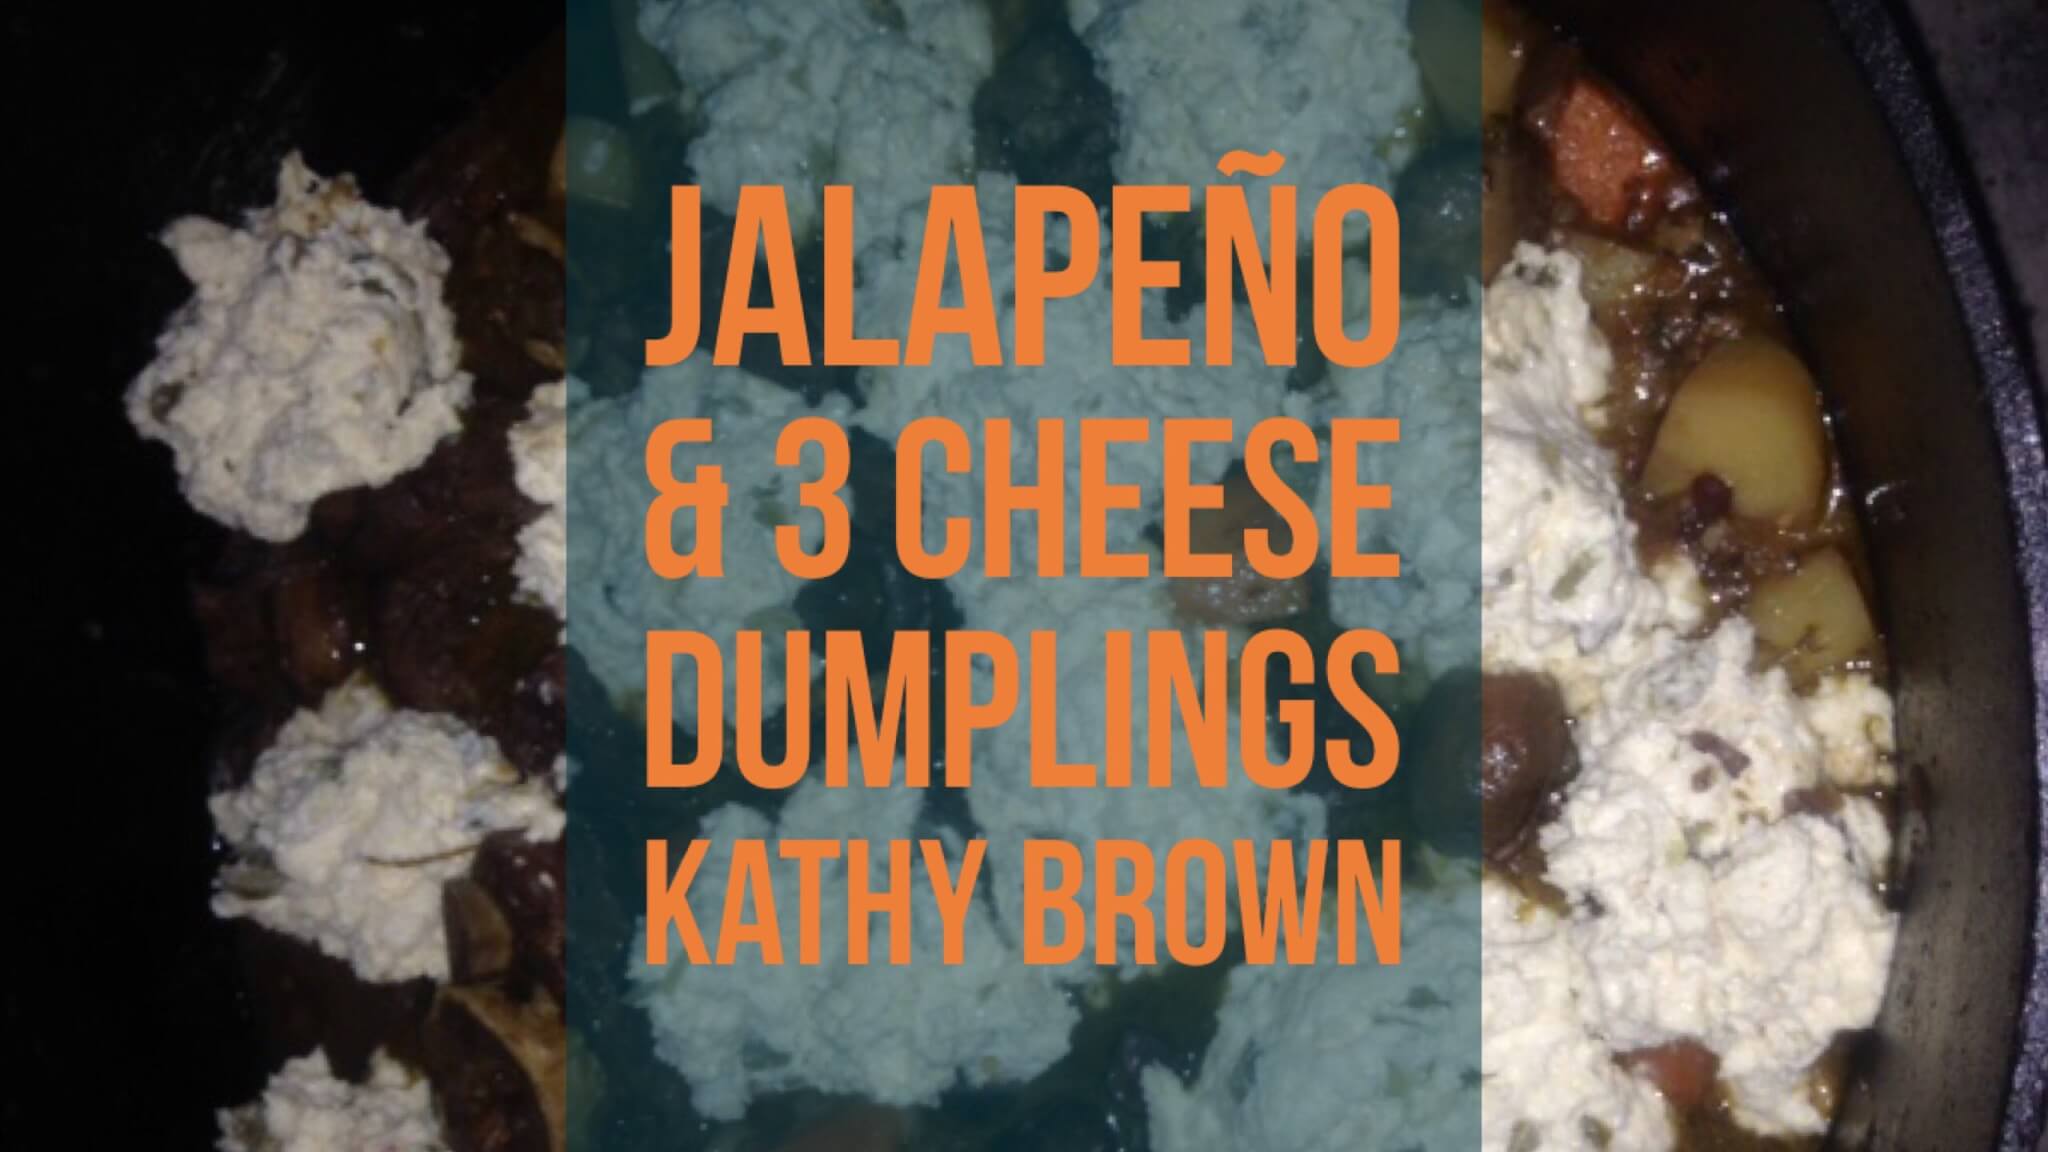 Jalapeño & 3 cheese dumplings | Kathy Brown